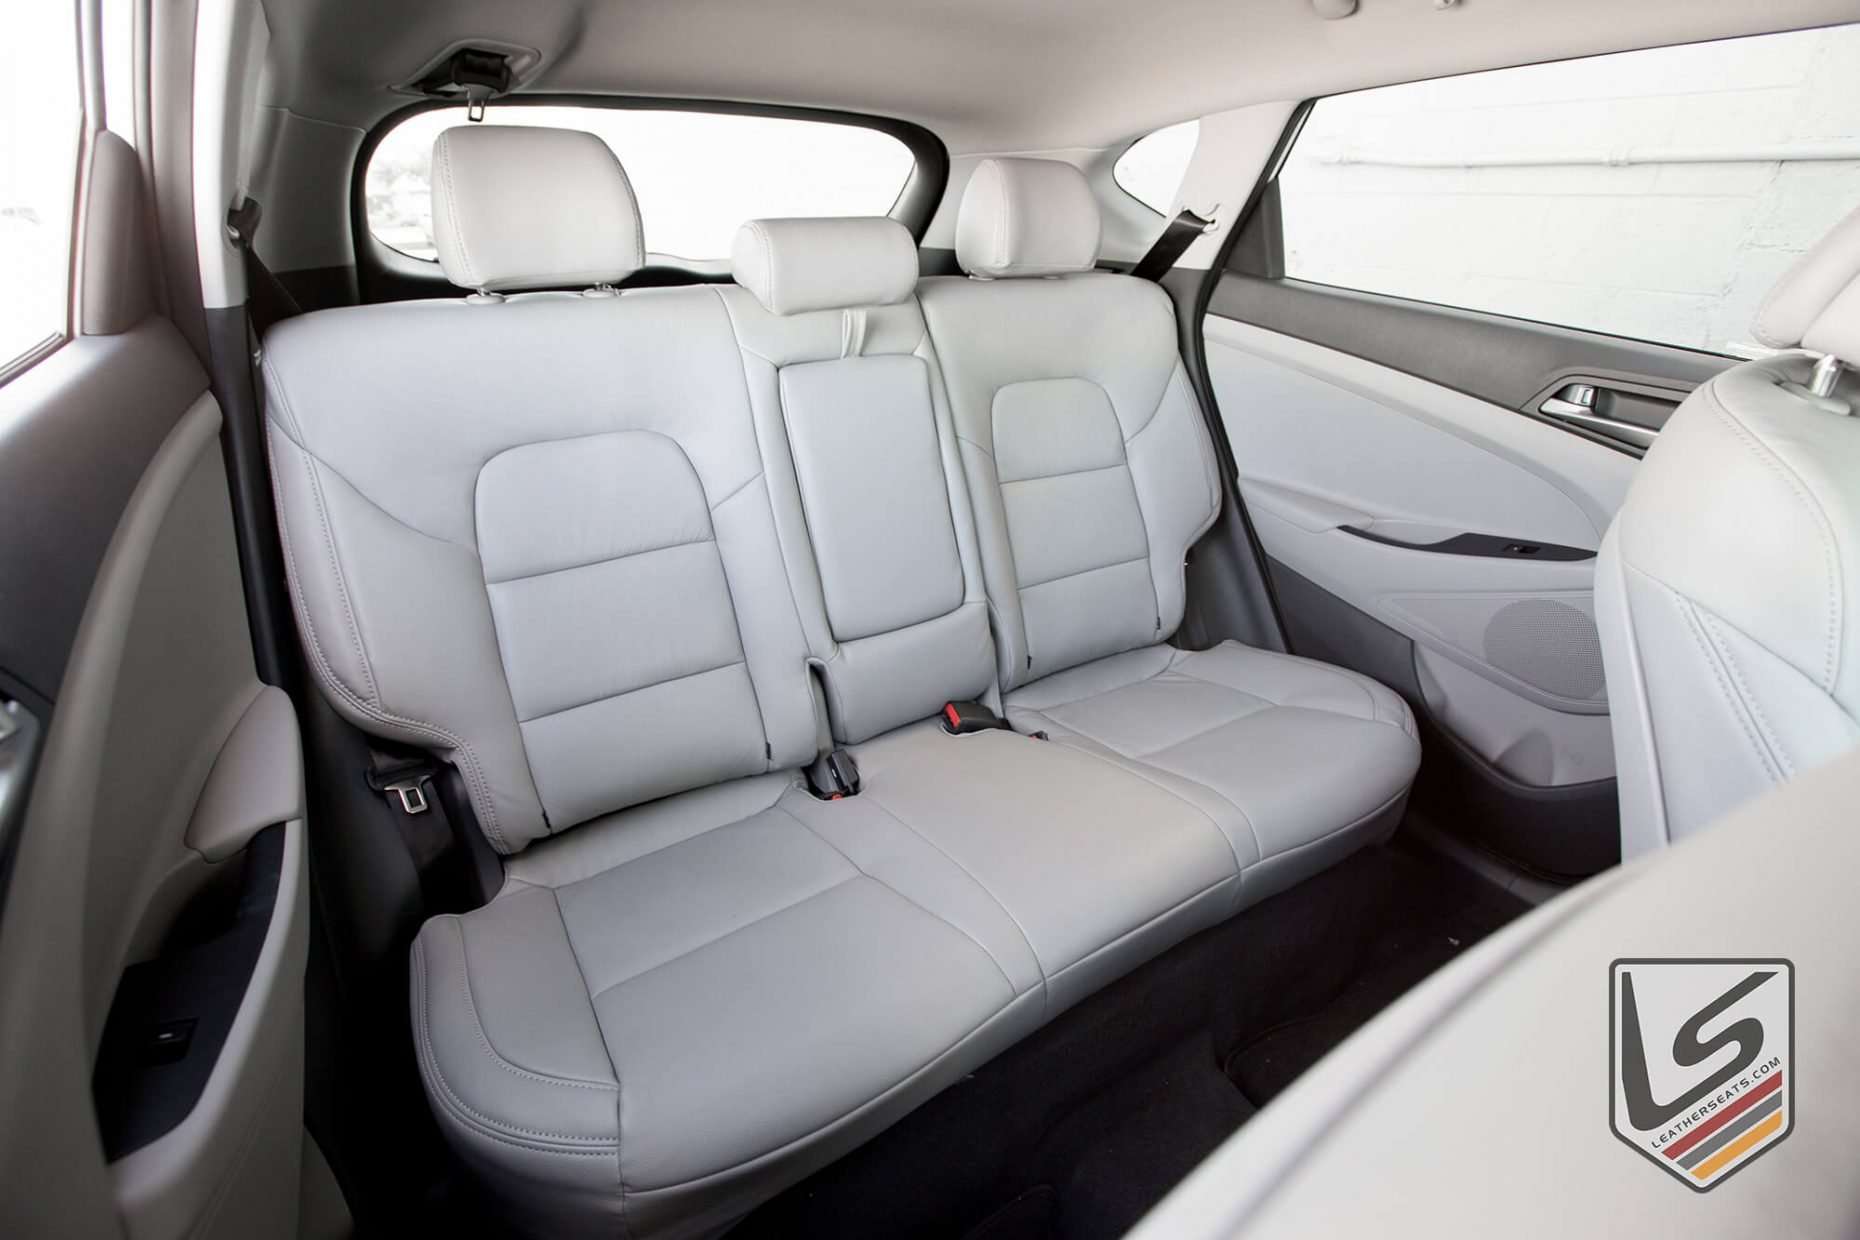 2016-2018 Hyundai Tucson with single-tone Ash leather seats - Rear seats